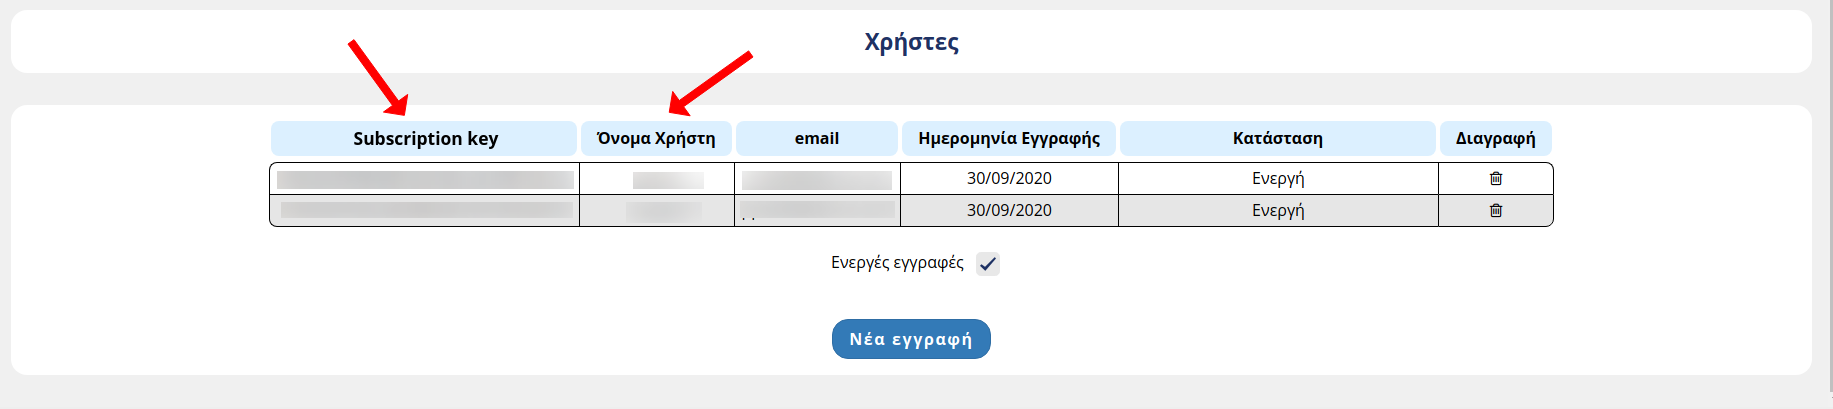 Τα πεδία "Όνομα χρήστη" και "Subscription key", όπως εμφανίζονται στη σελίδα της ΑΑΔΕ